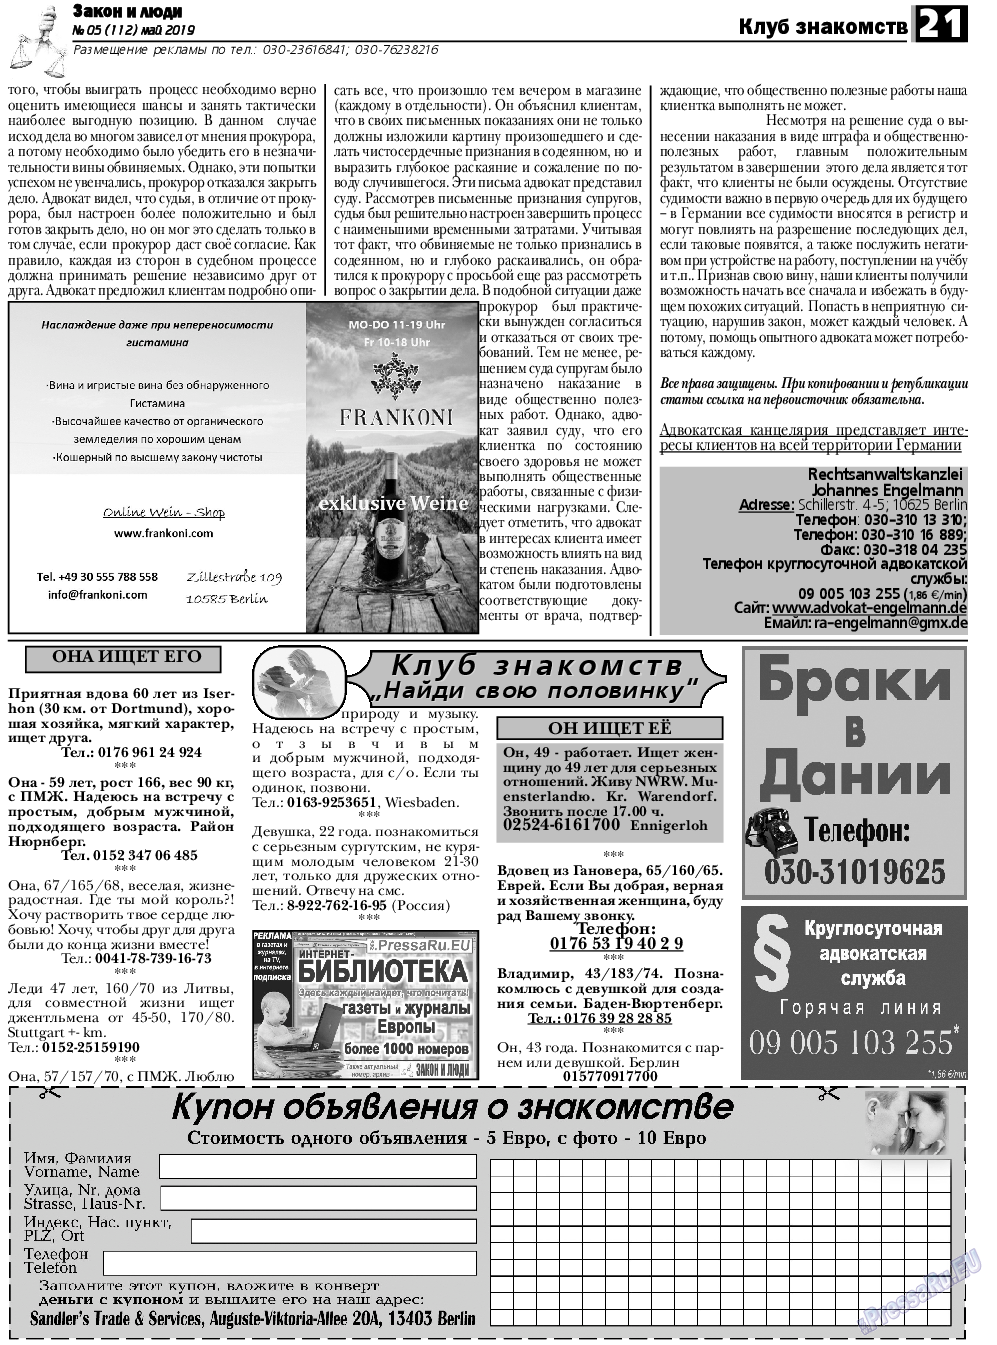 Закон и люди, газета. 2019 №5 стр.21